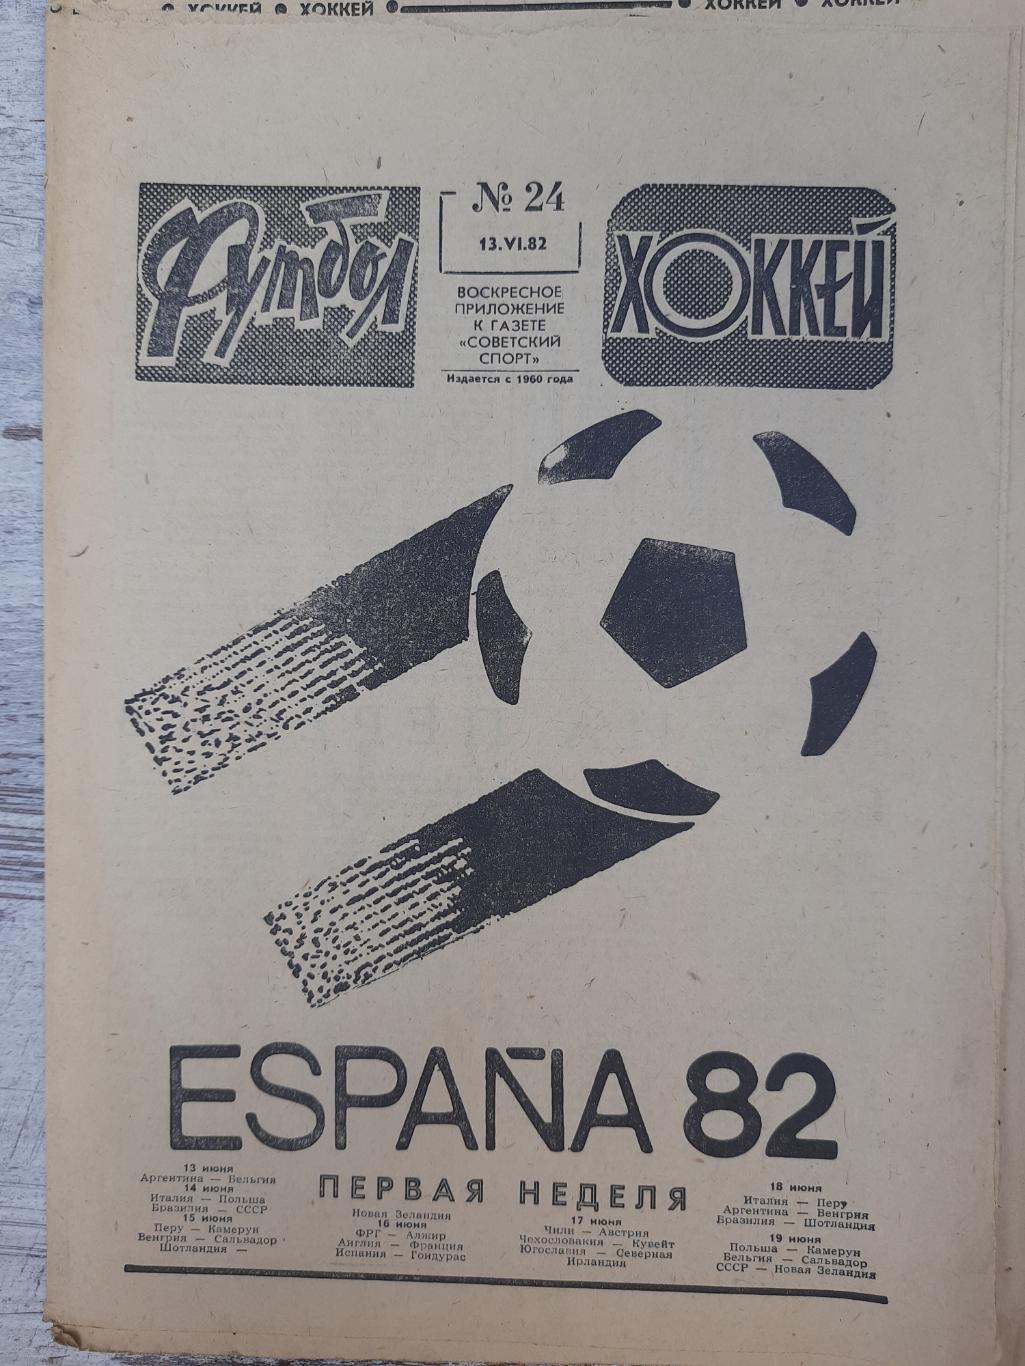 еженедельник футбол-хоккей #24, 1982.